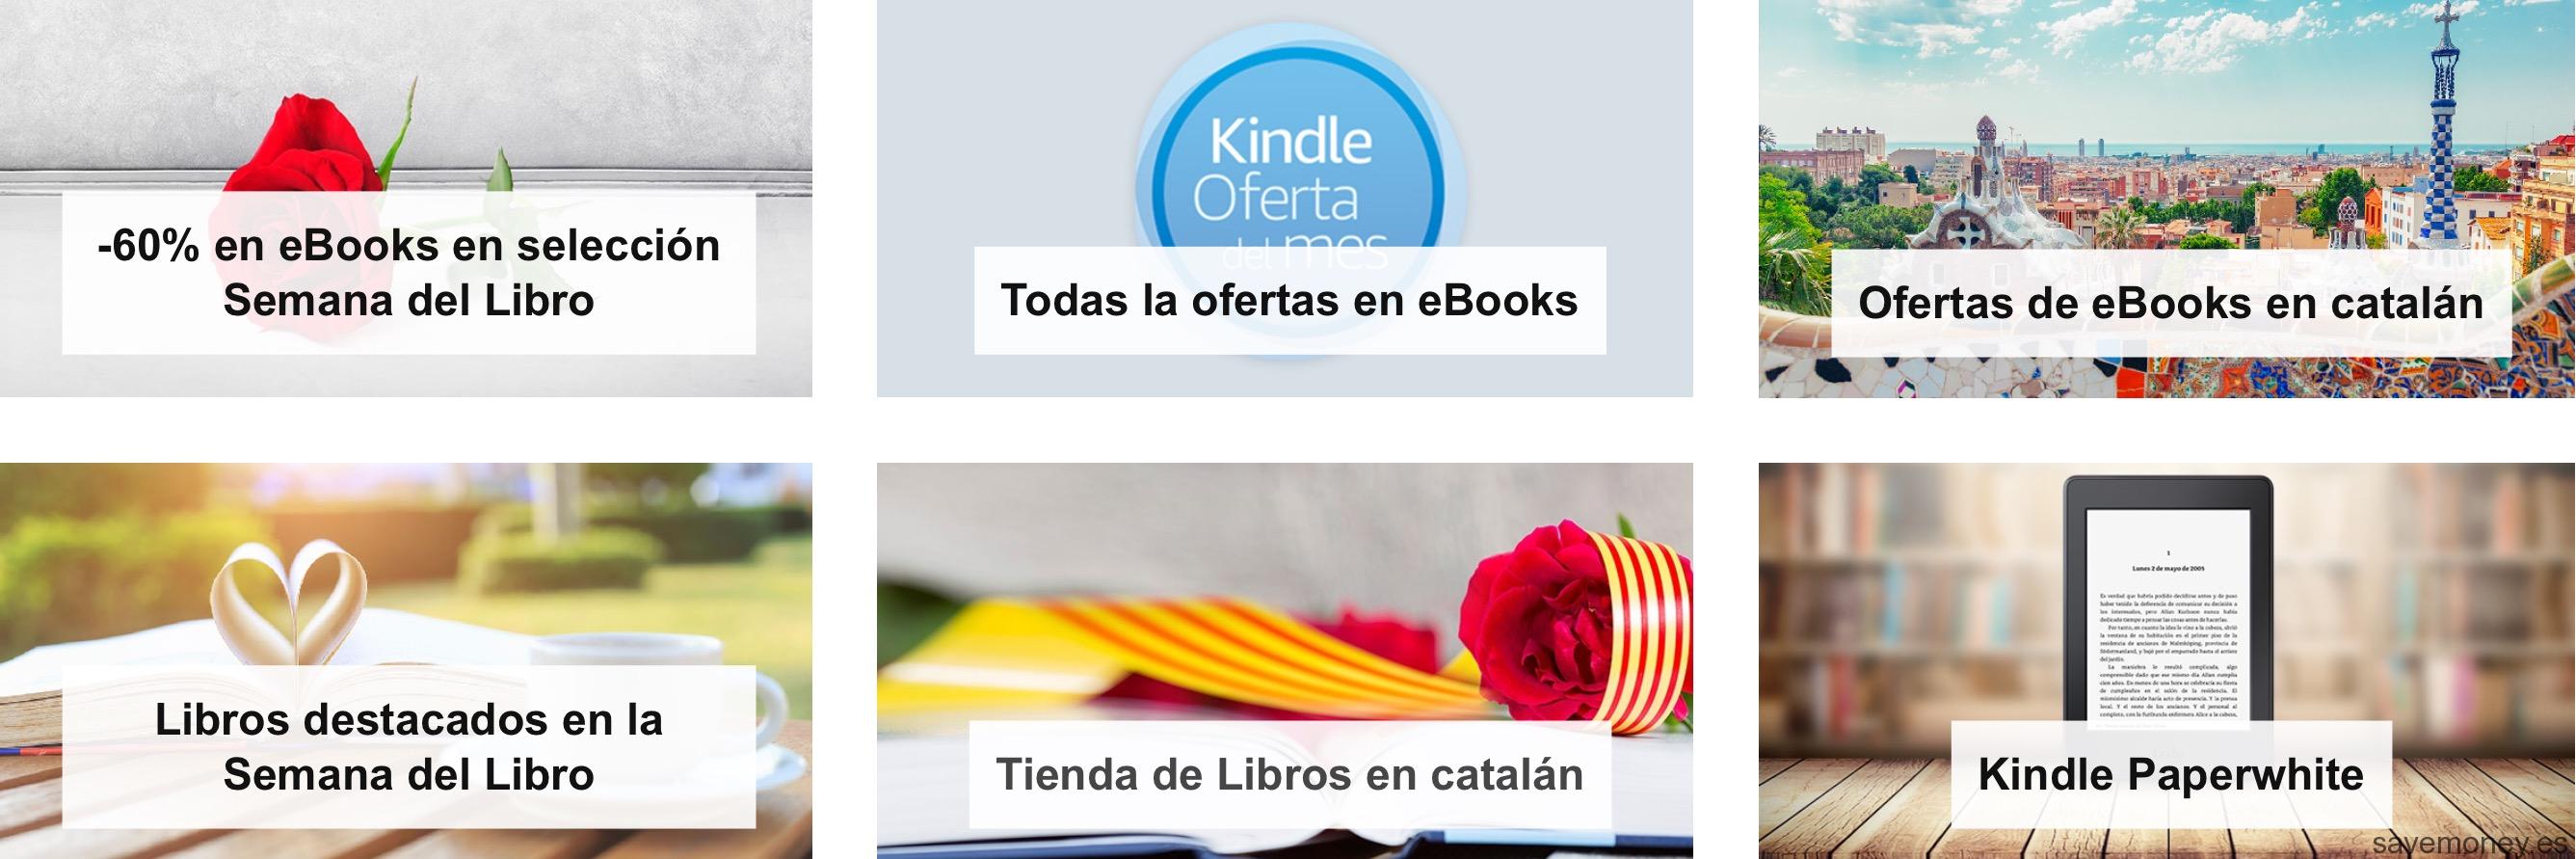 Ofertas Amazon: La Semana del Libro